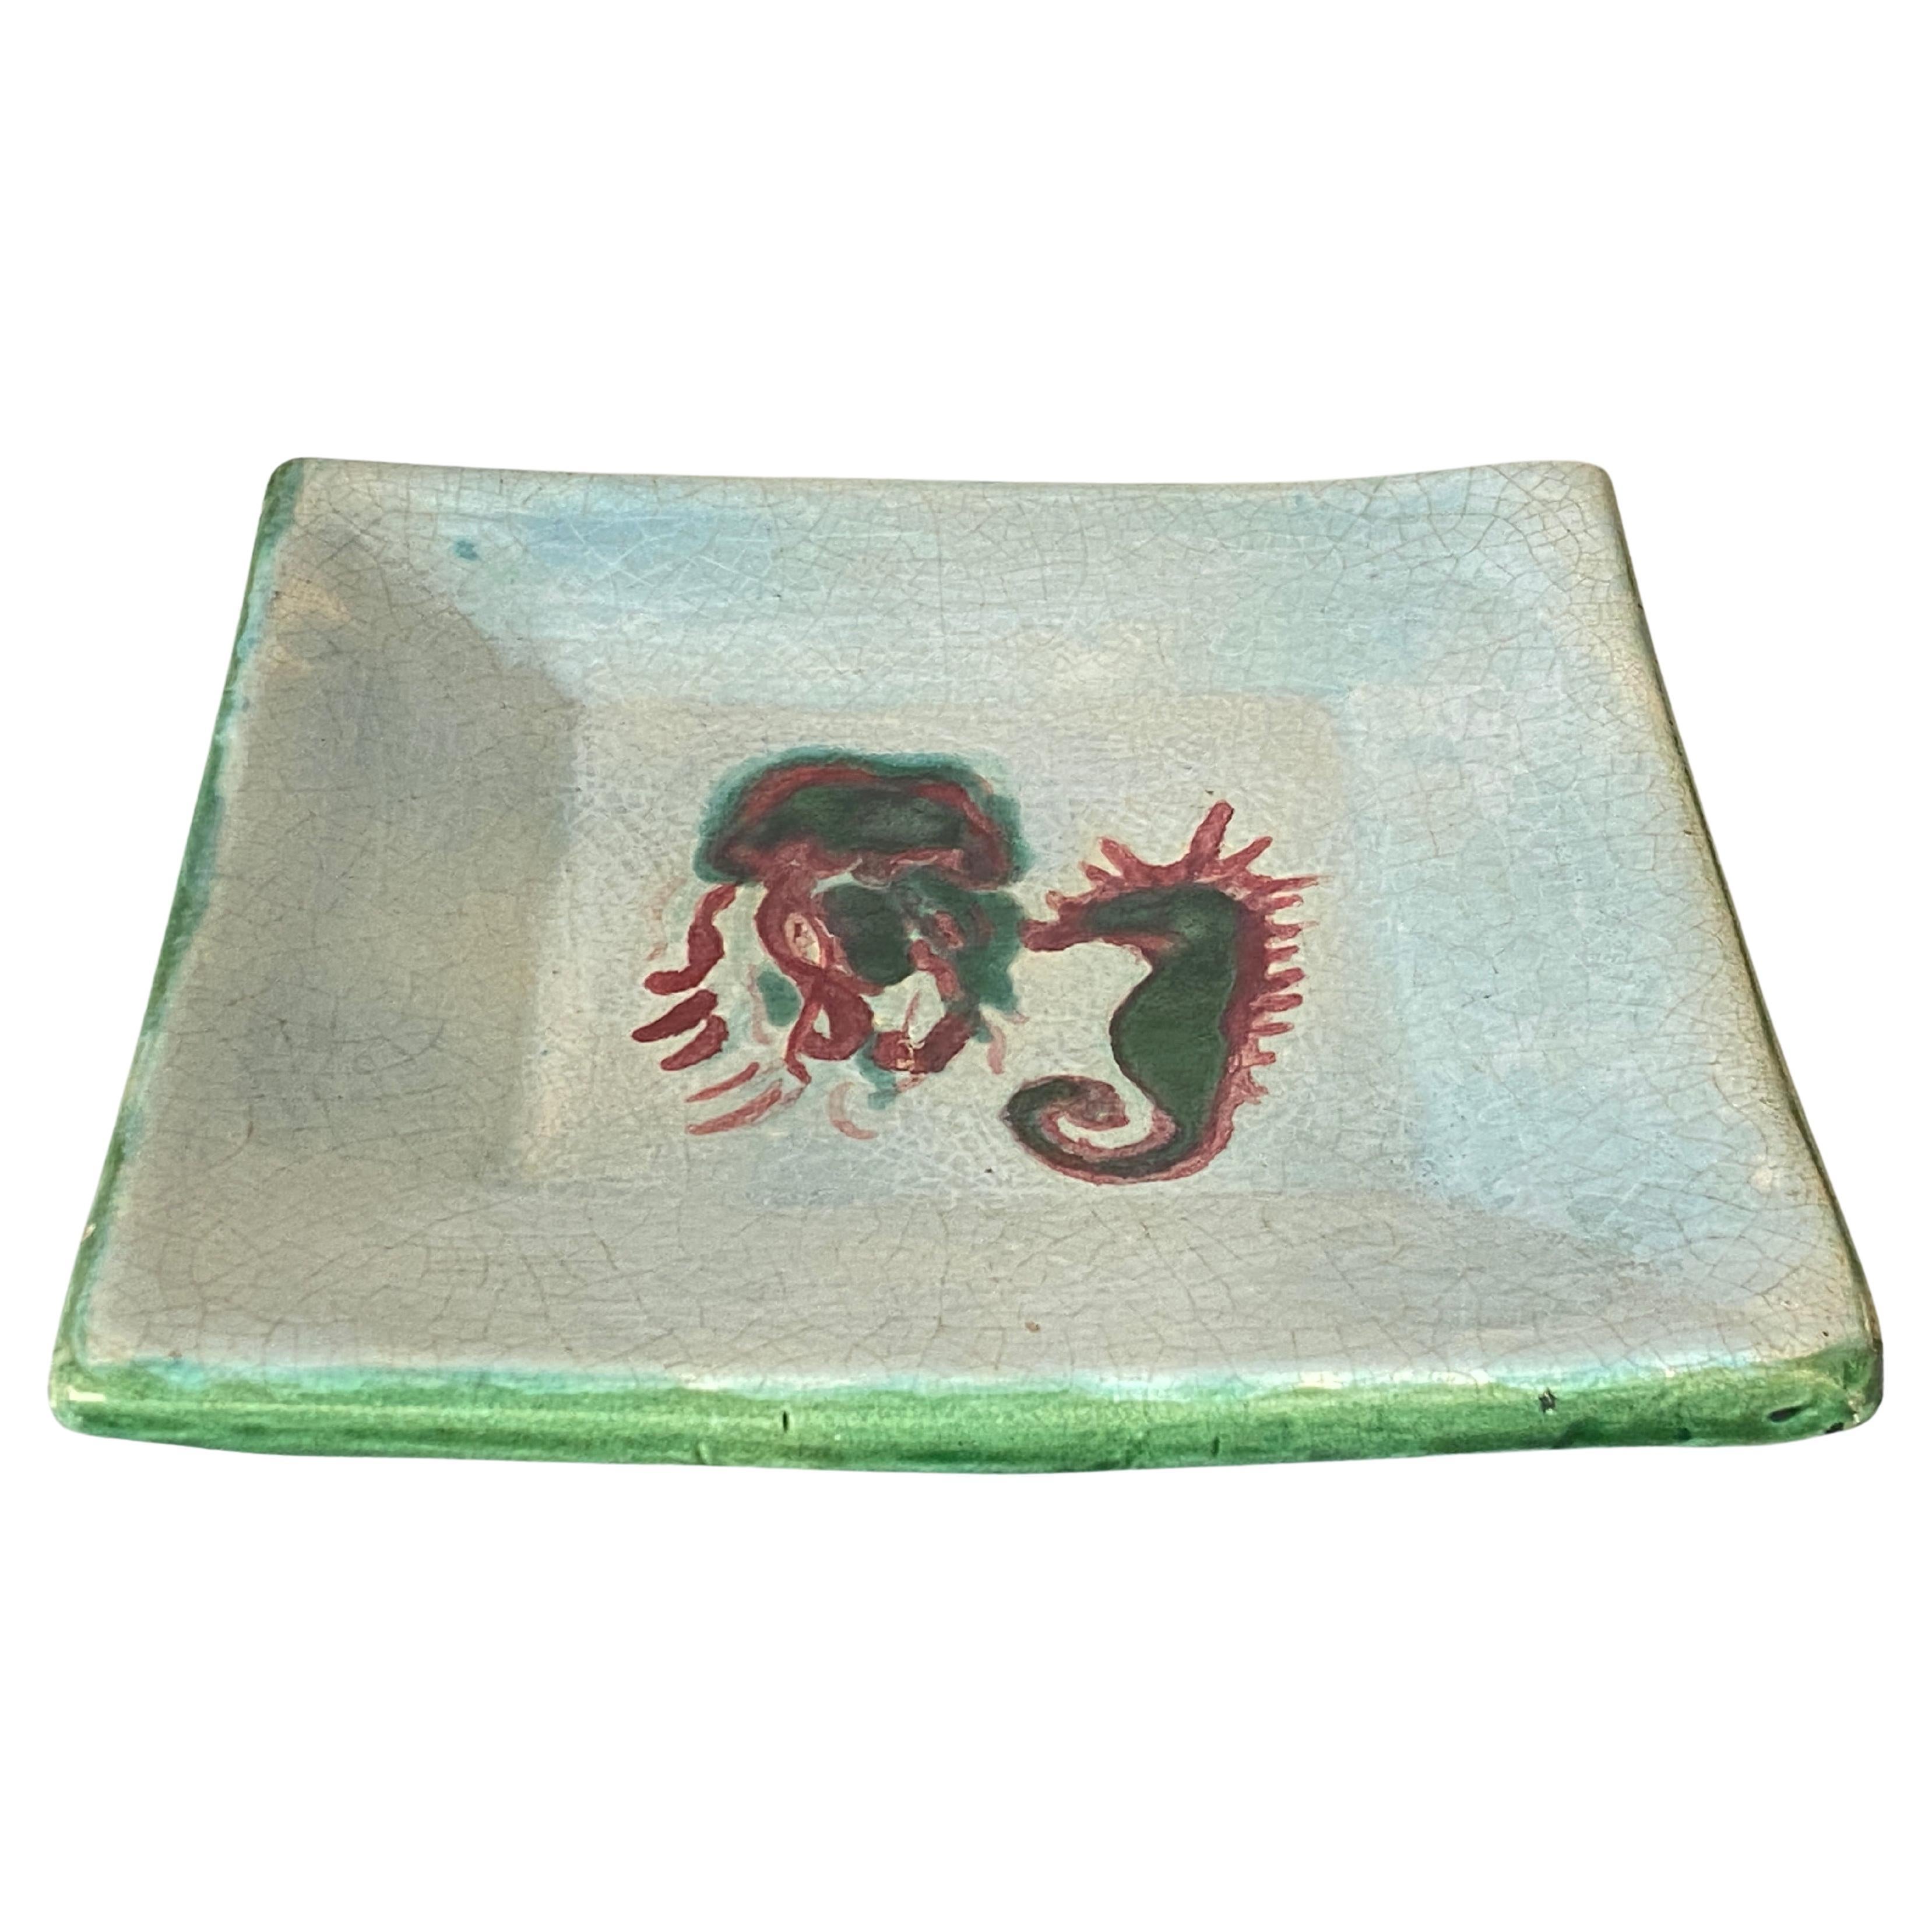 Ceramic Vide Poche, Decorative Dish, Representing a Sea Horse White and Green